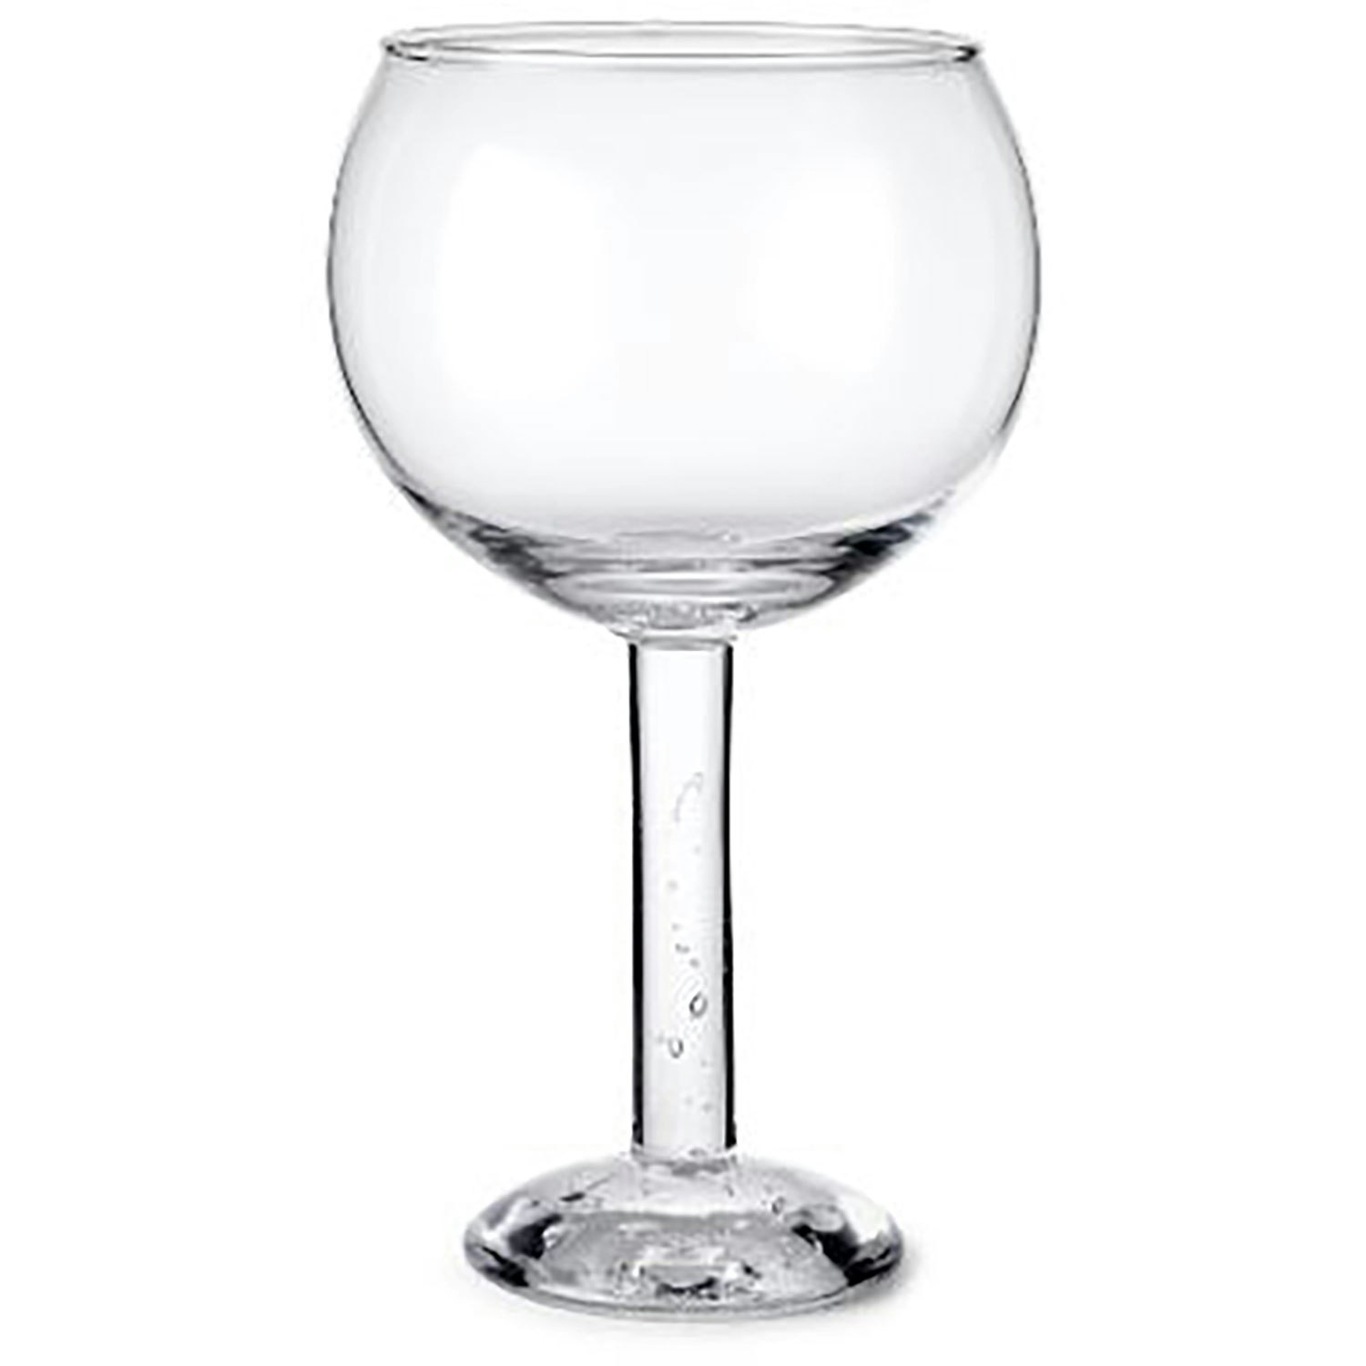 https://royaldesign.com/image/2/louise-roe-bubble-glass-cocktail-plain-top-0?w=800&quality=80